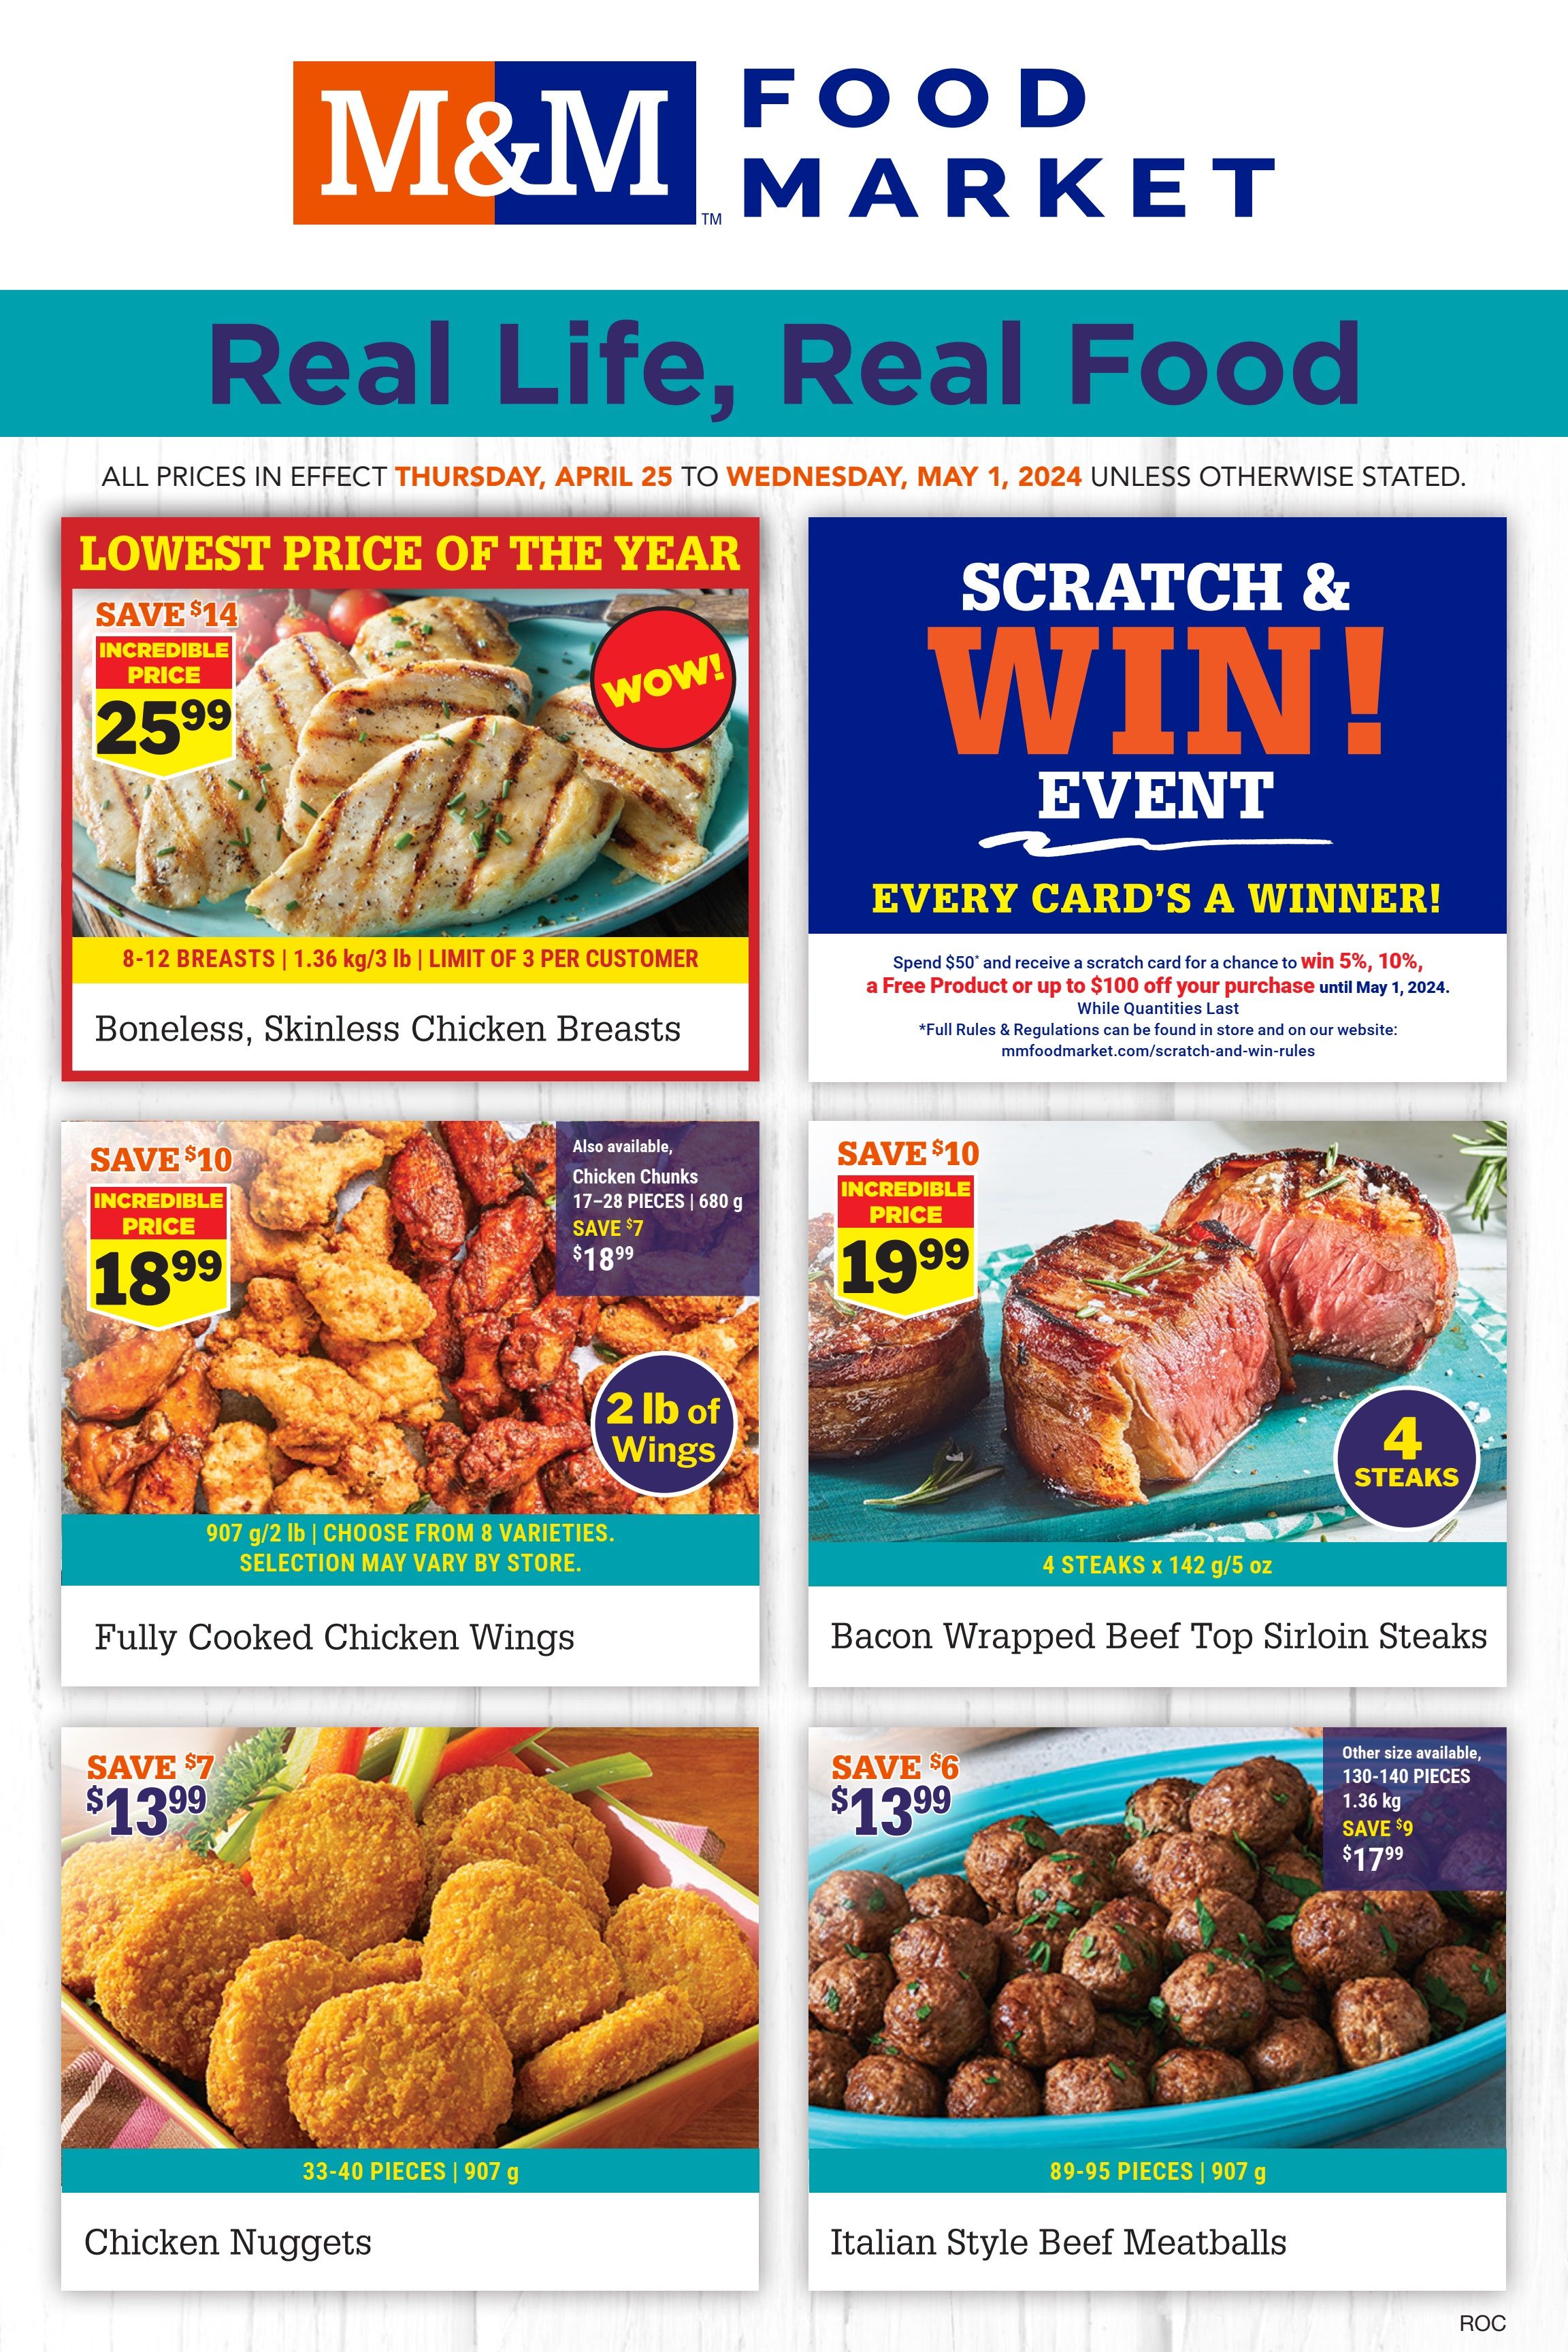 M&M Food Market - Atlantic Canada - Weekly Flyer Specials